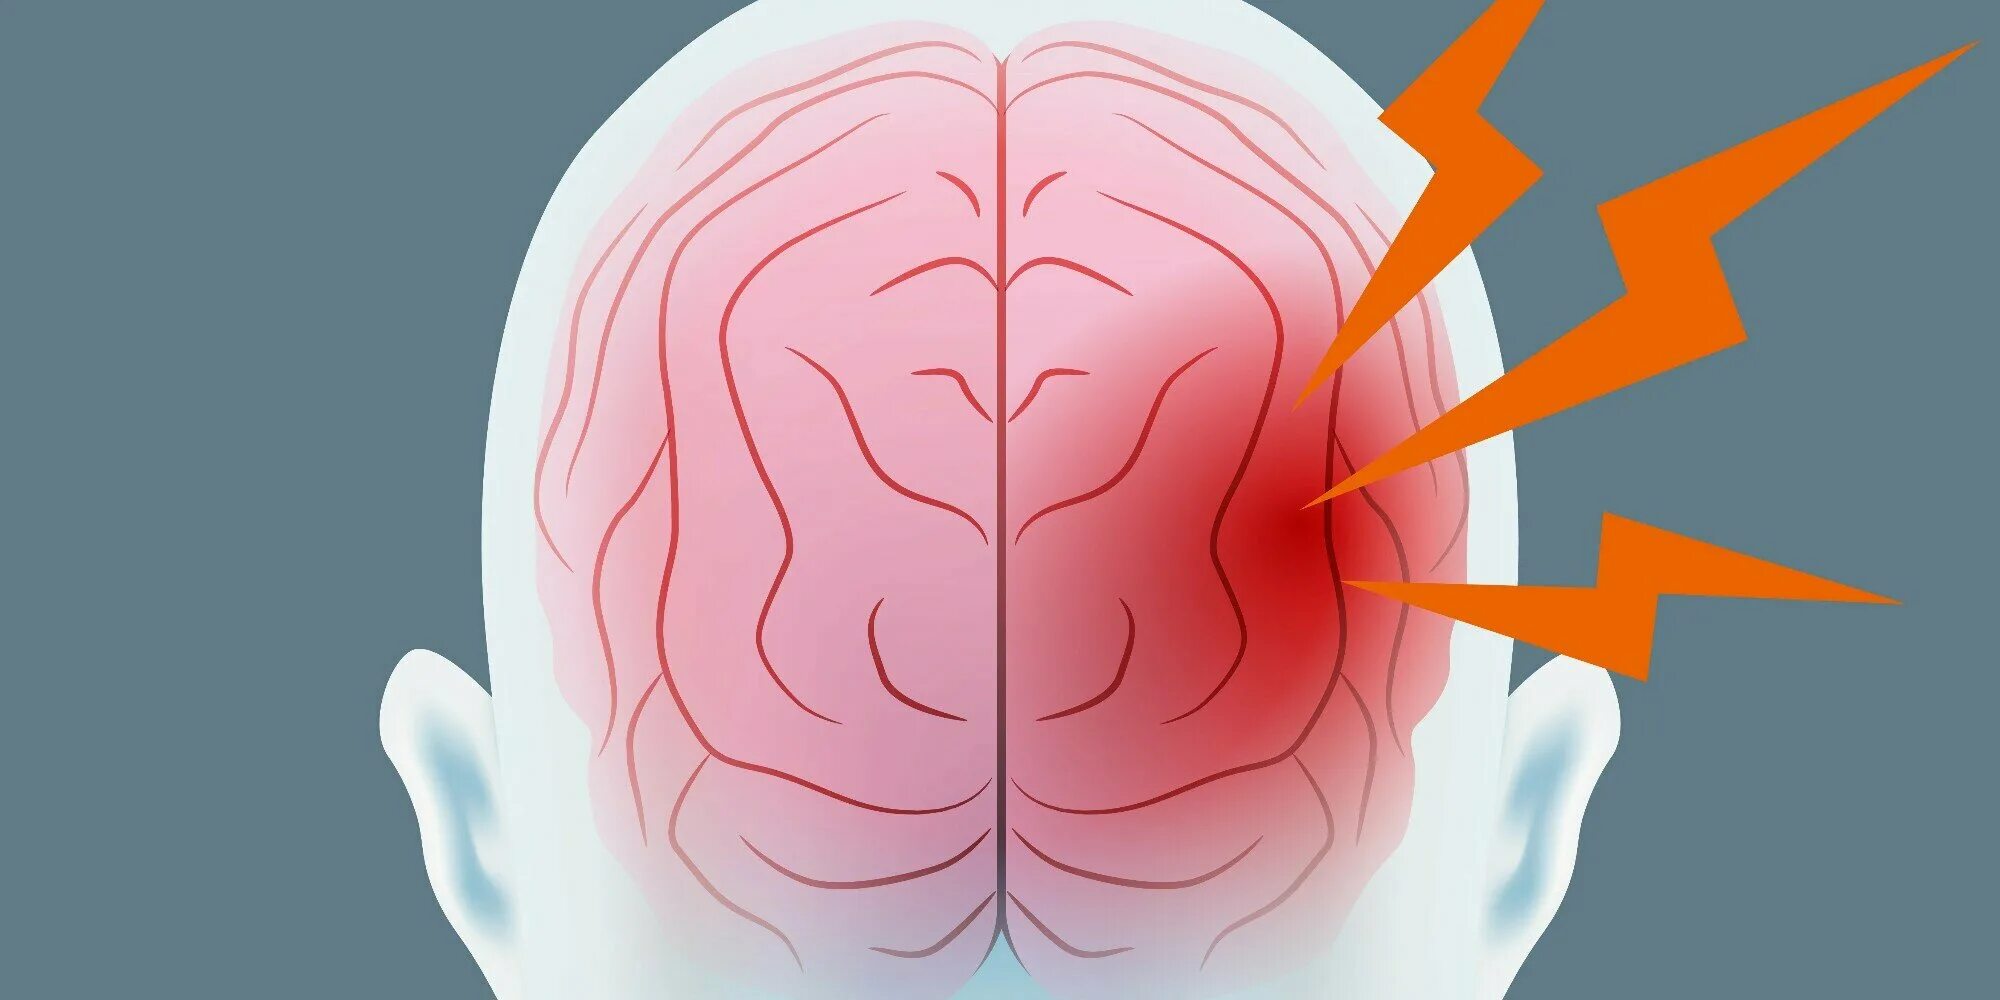 Левое полушарие мозга инсульт. Мигрень цефалгия. Боль напряжения в голове.